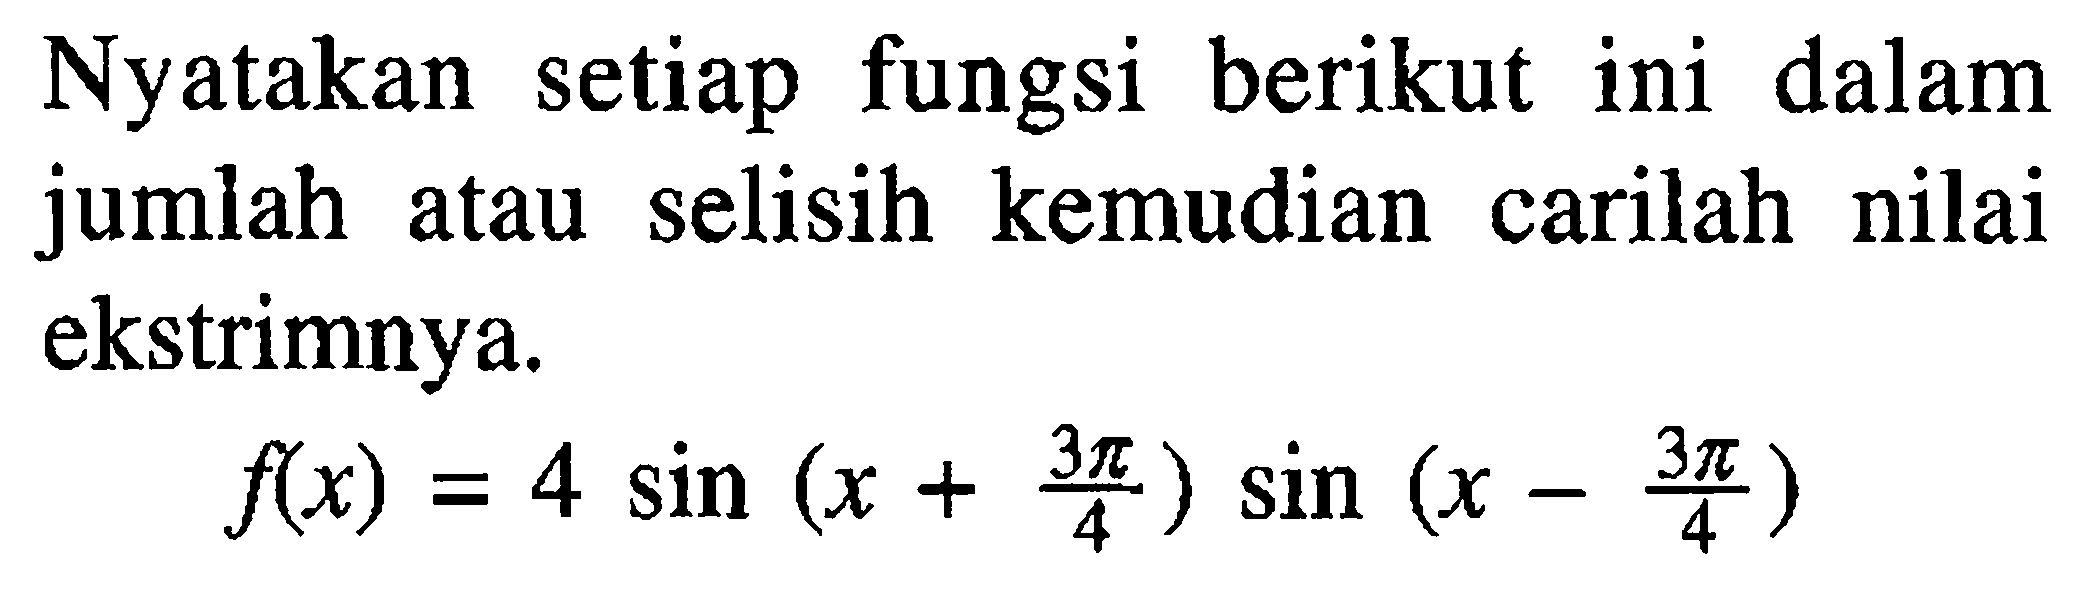 Nyatakan setiap fungsi berikut ini dalam jumlah atau selisih kemudian carilah nilai ekstrimnya. f(x)=4sin(x+3pi/4) sin(x-3pi/4)